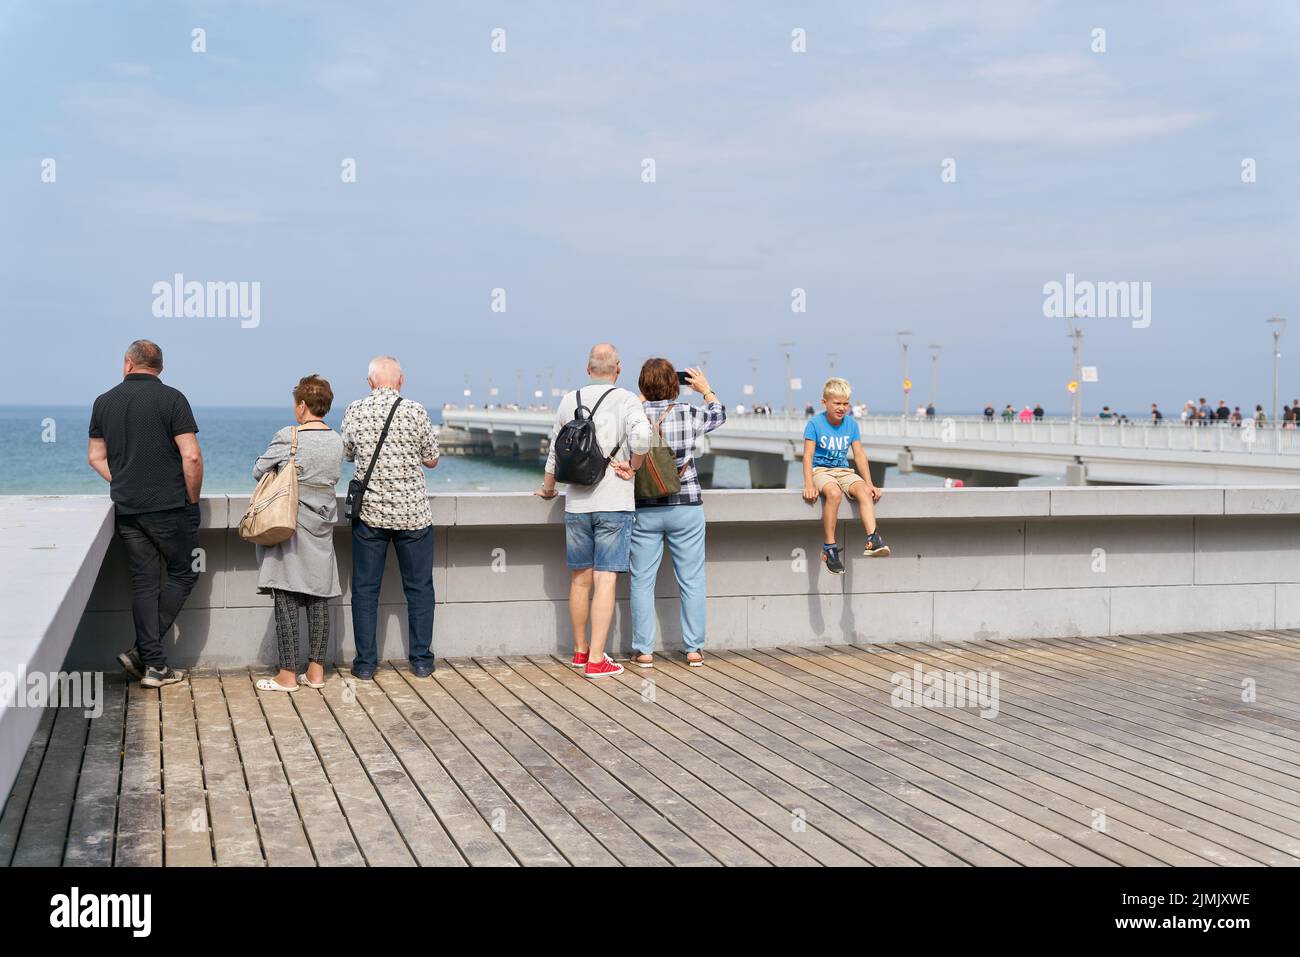 Urlauber an der Seepromenade von Kolobrzeg an der polnischen Ostseeküste Stockfoto